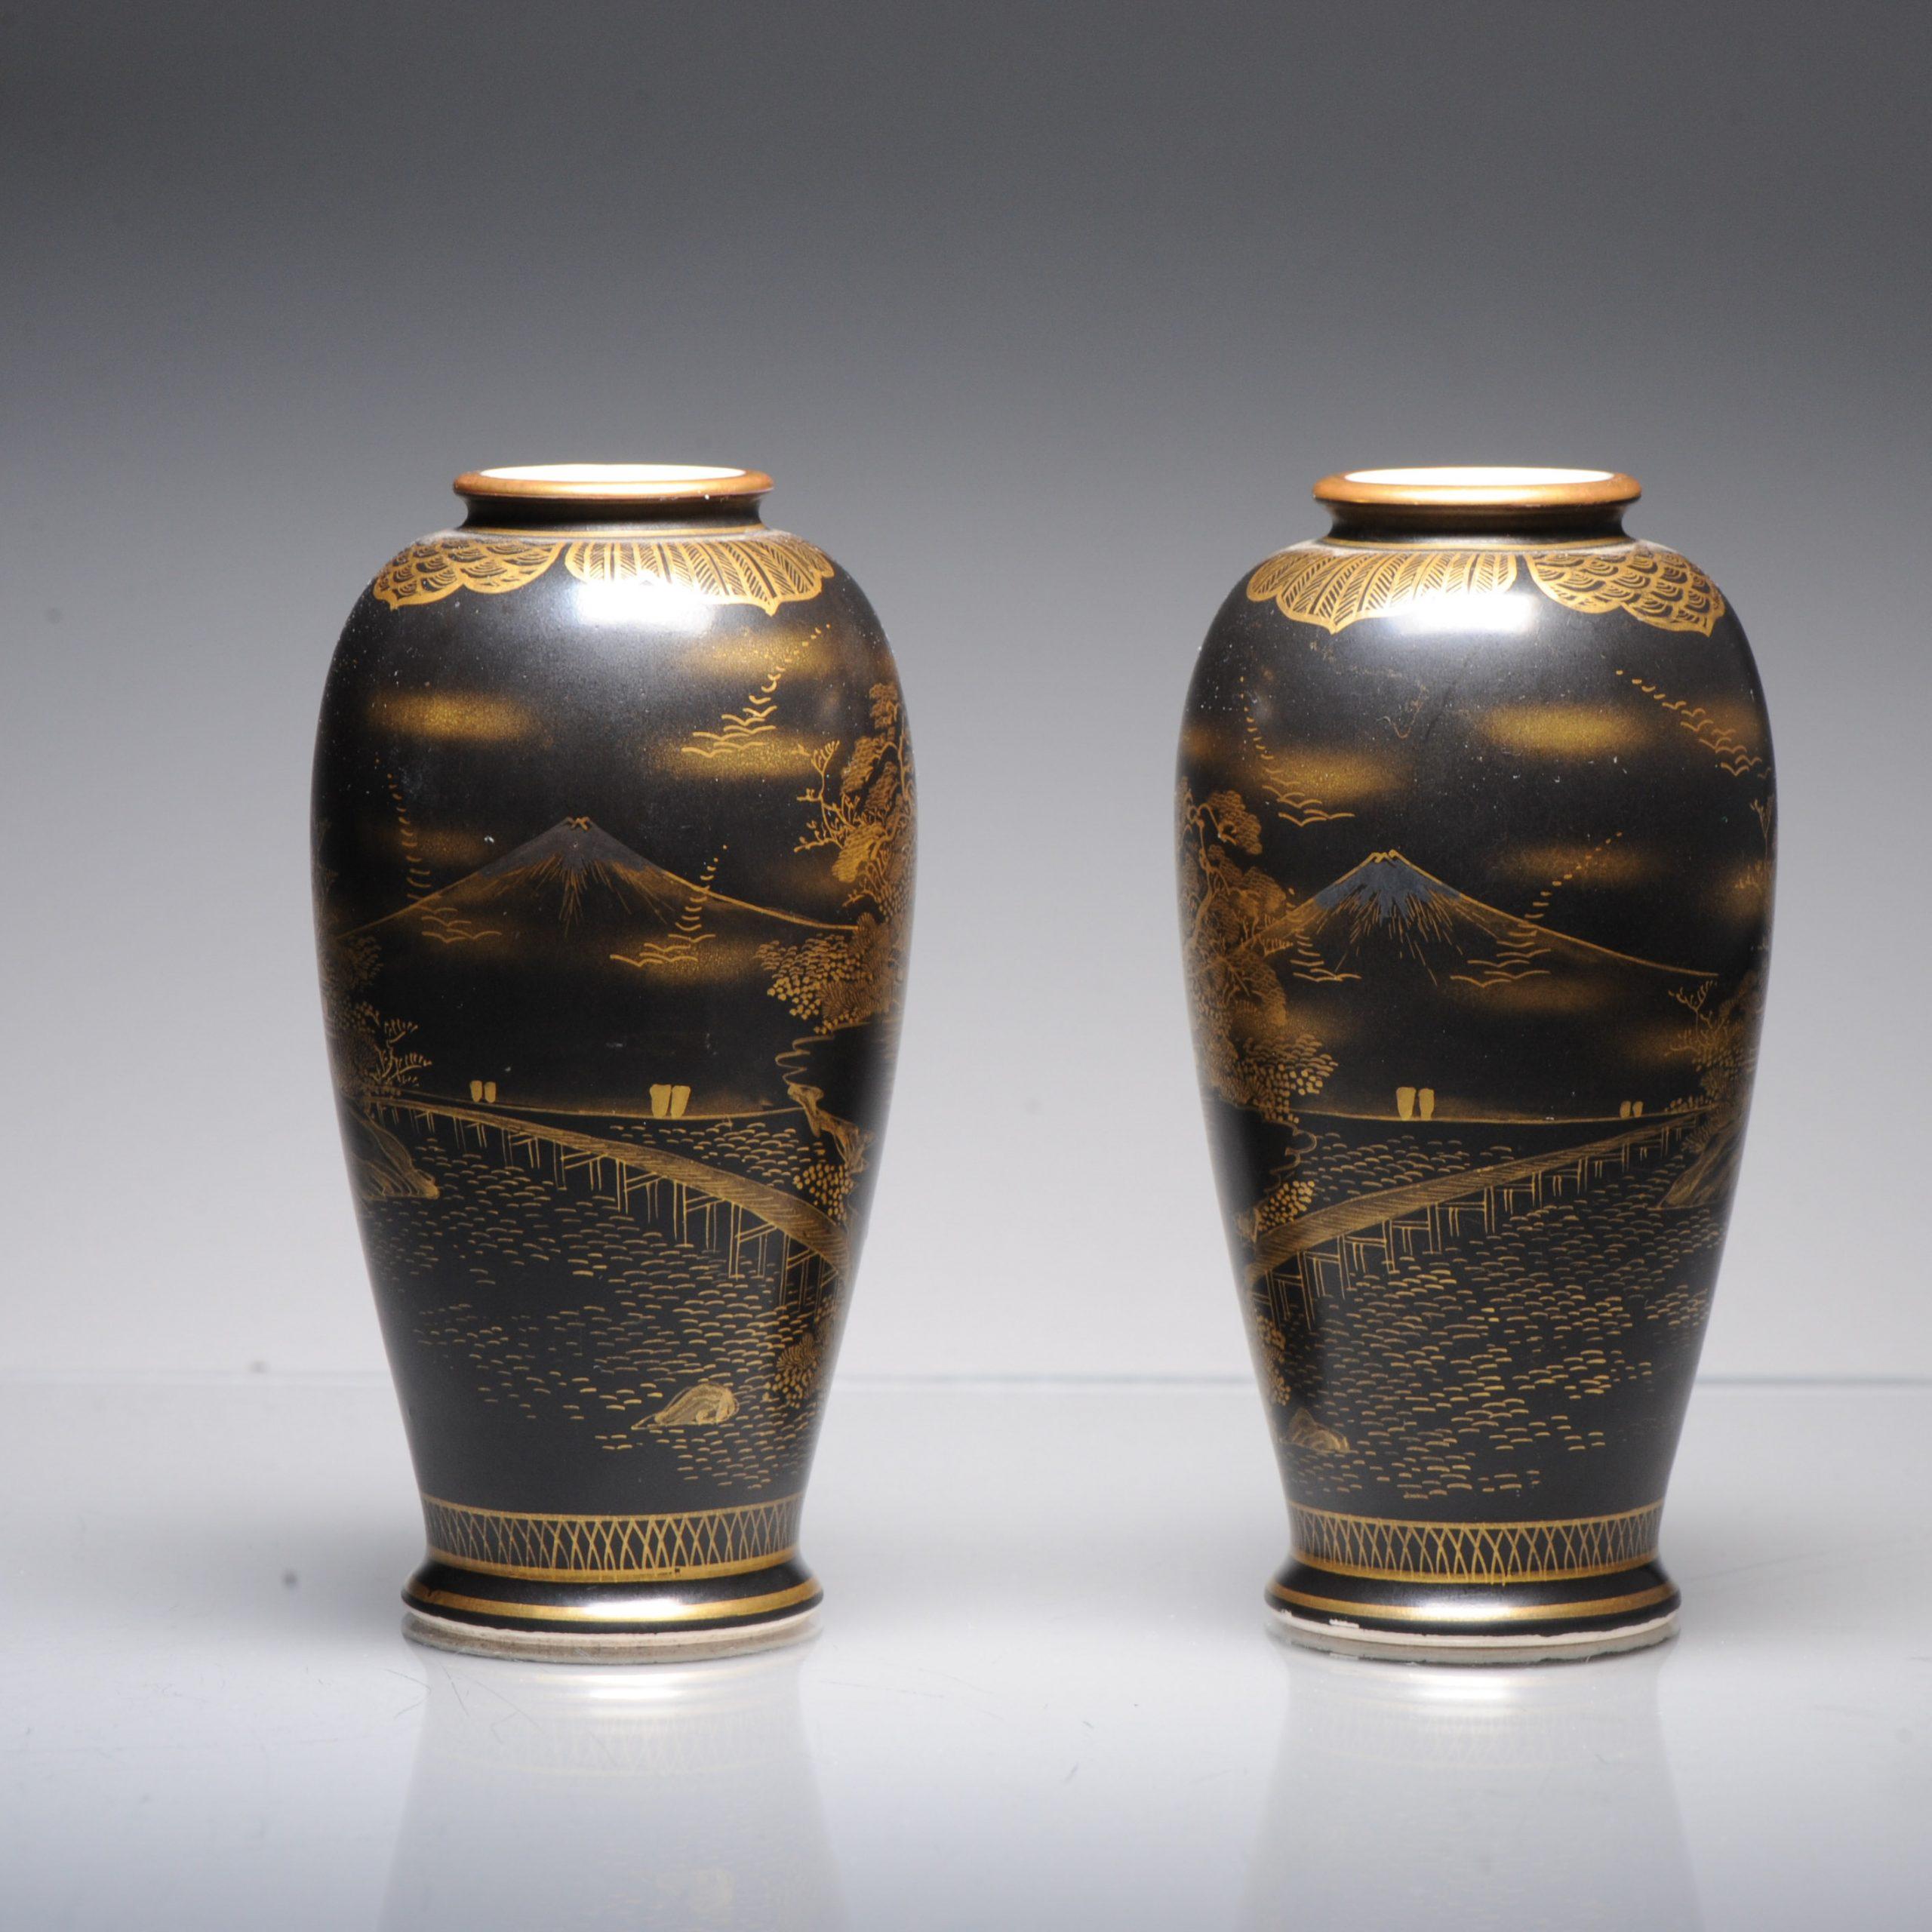 Description
Paire de vases japonais à fond noir de Satsuma, marques Uchida, période Meiji/Taisho
De forme ovoïde à bords évasés, peinte en doré de scènes du Mont Fuji sur fond noir.

Marqué :